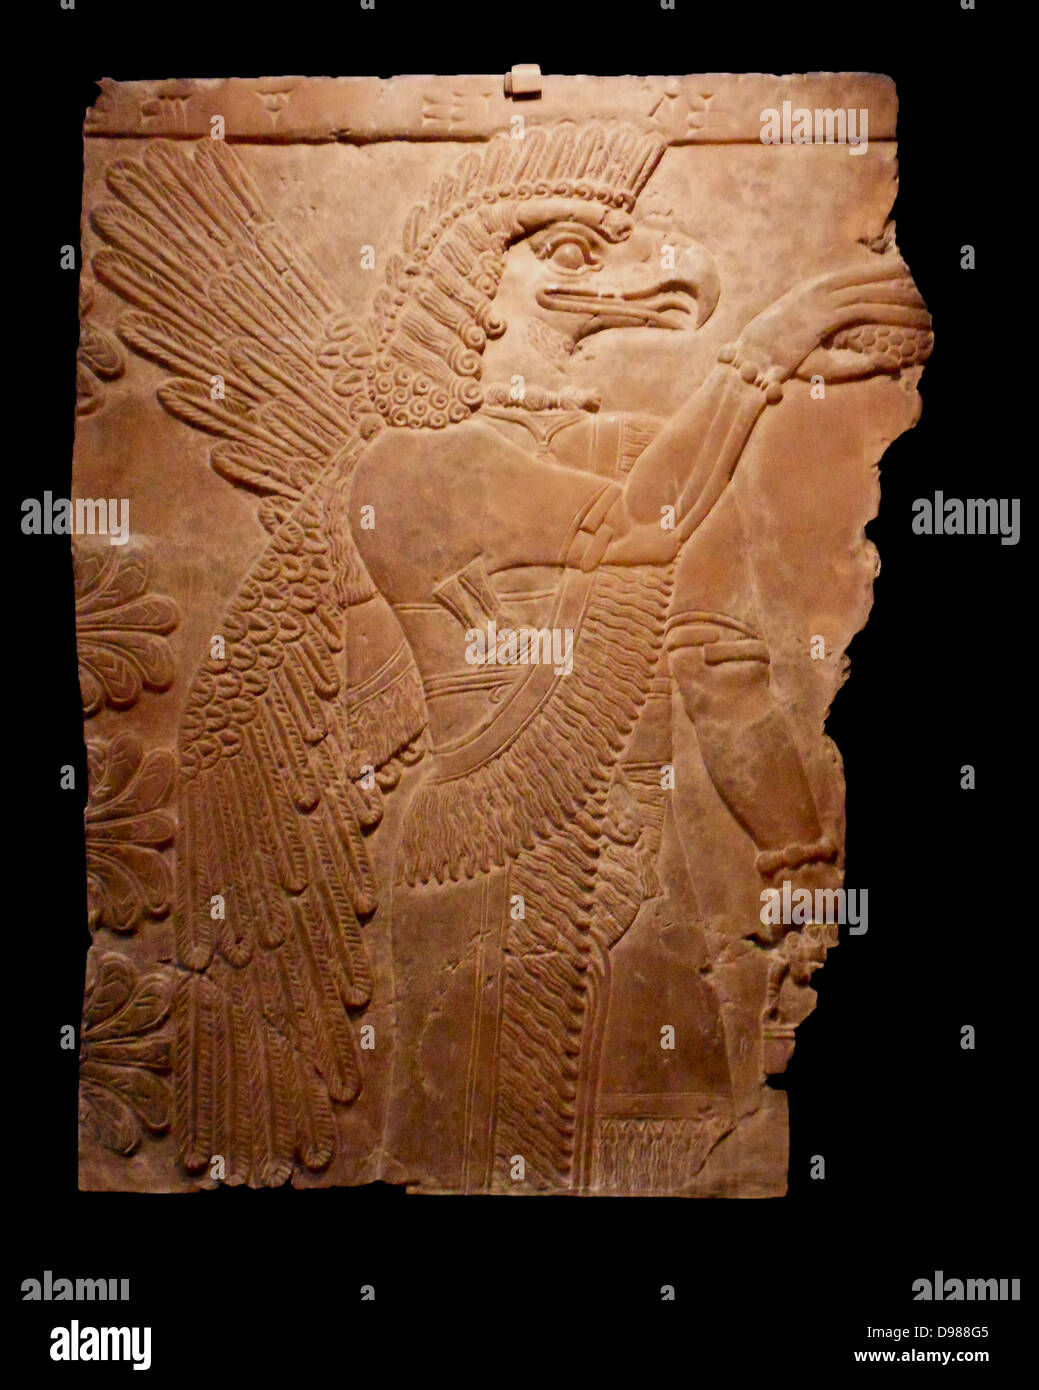 Assyrische geflügelte Genie eine Vierflügelige genie im Akt der Bestäubung. Befreiung von der Nordwand des Palastes von Ashur-Nasir-pal II König von Assyrien von 883 bis 859 v. Chr. an Nimrud. Ashur-Nasir-pal II. seinem Vater, Tukulti-Ninurta II, 884 v. Chr. gelungen. Stockfoto